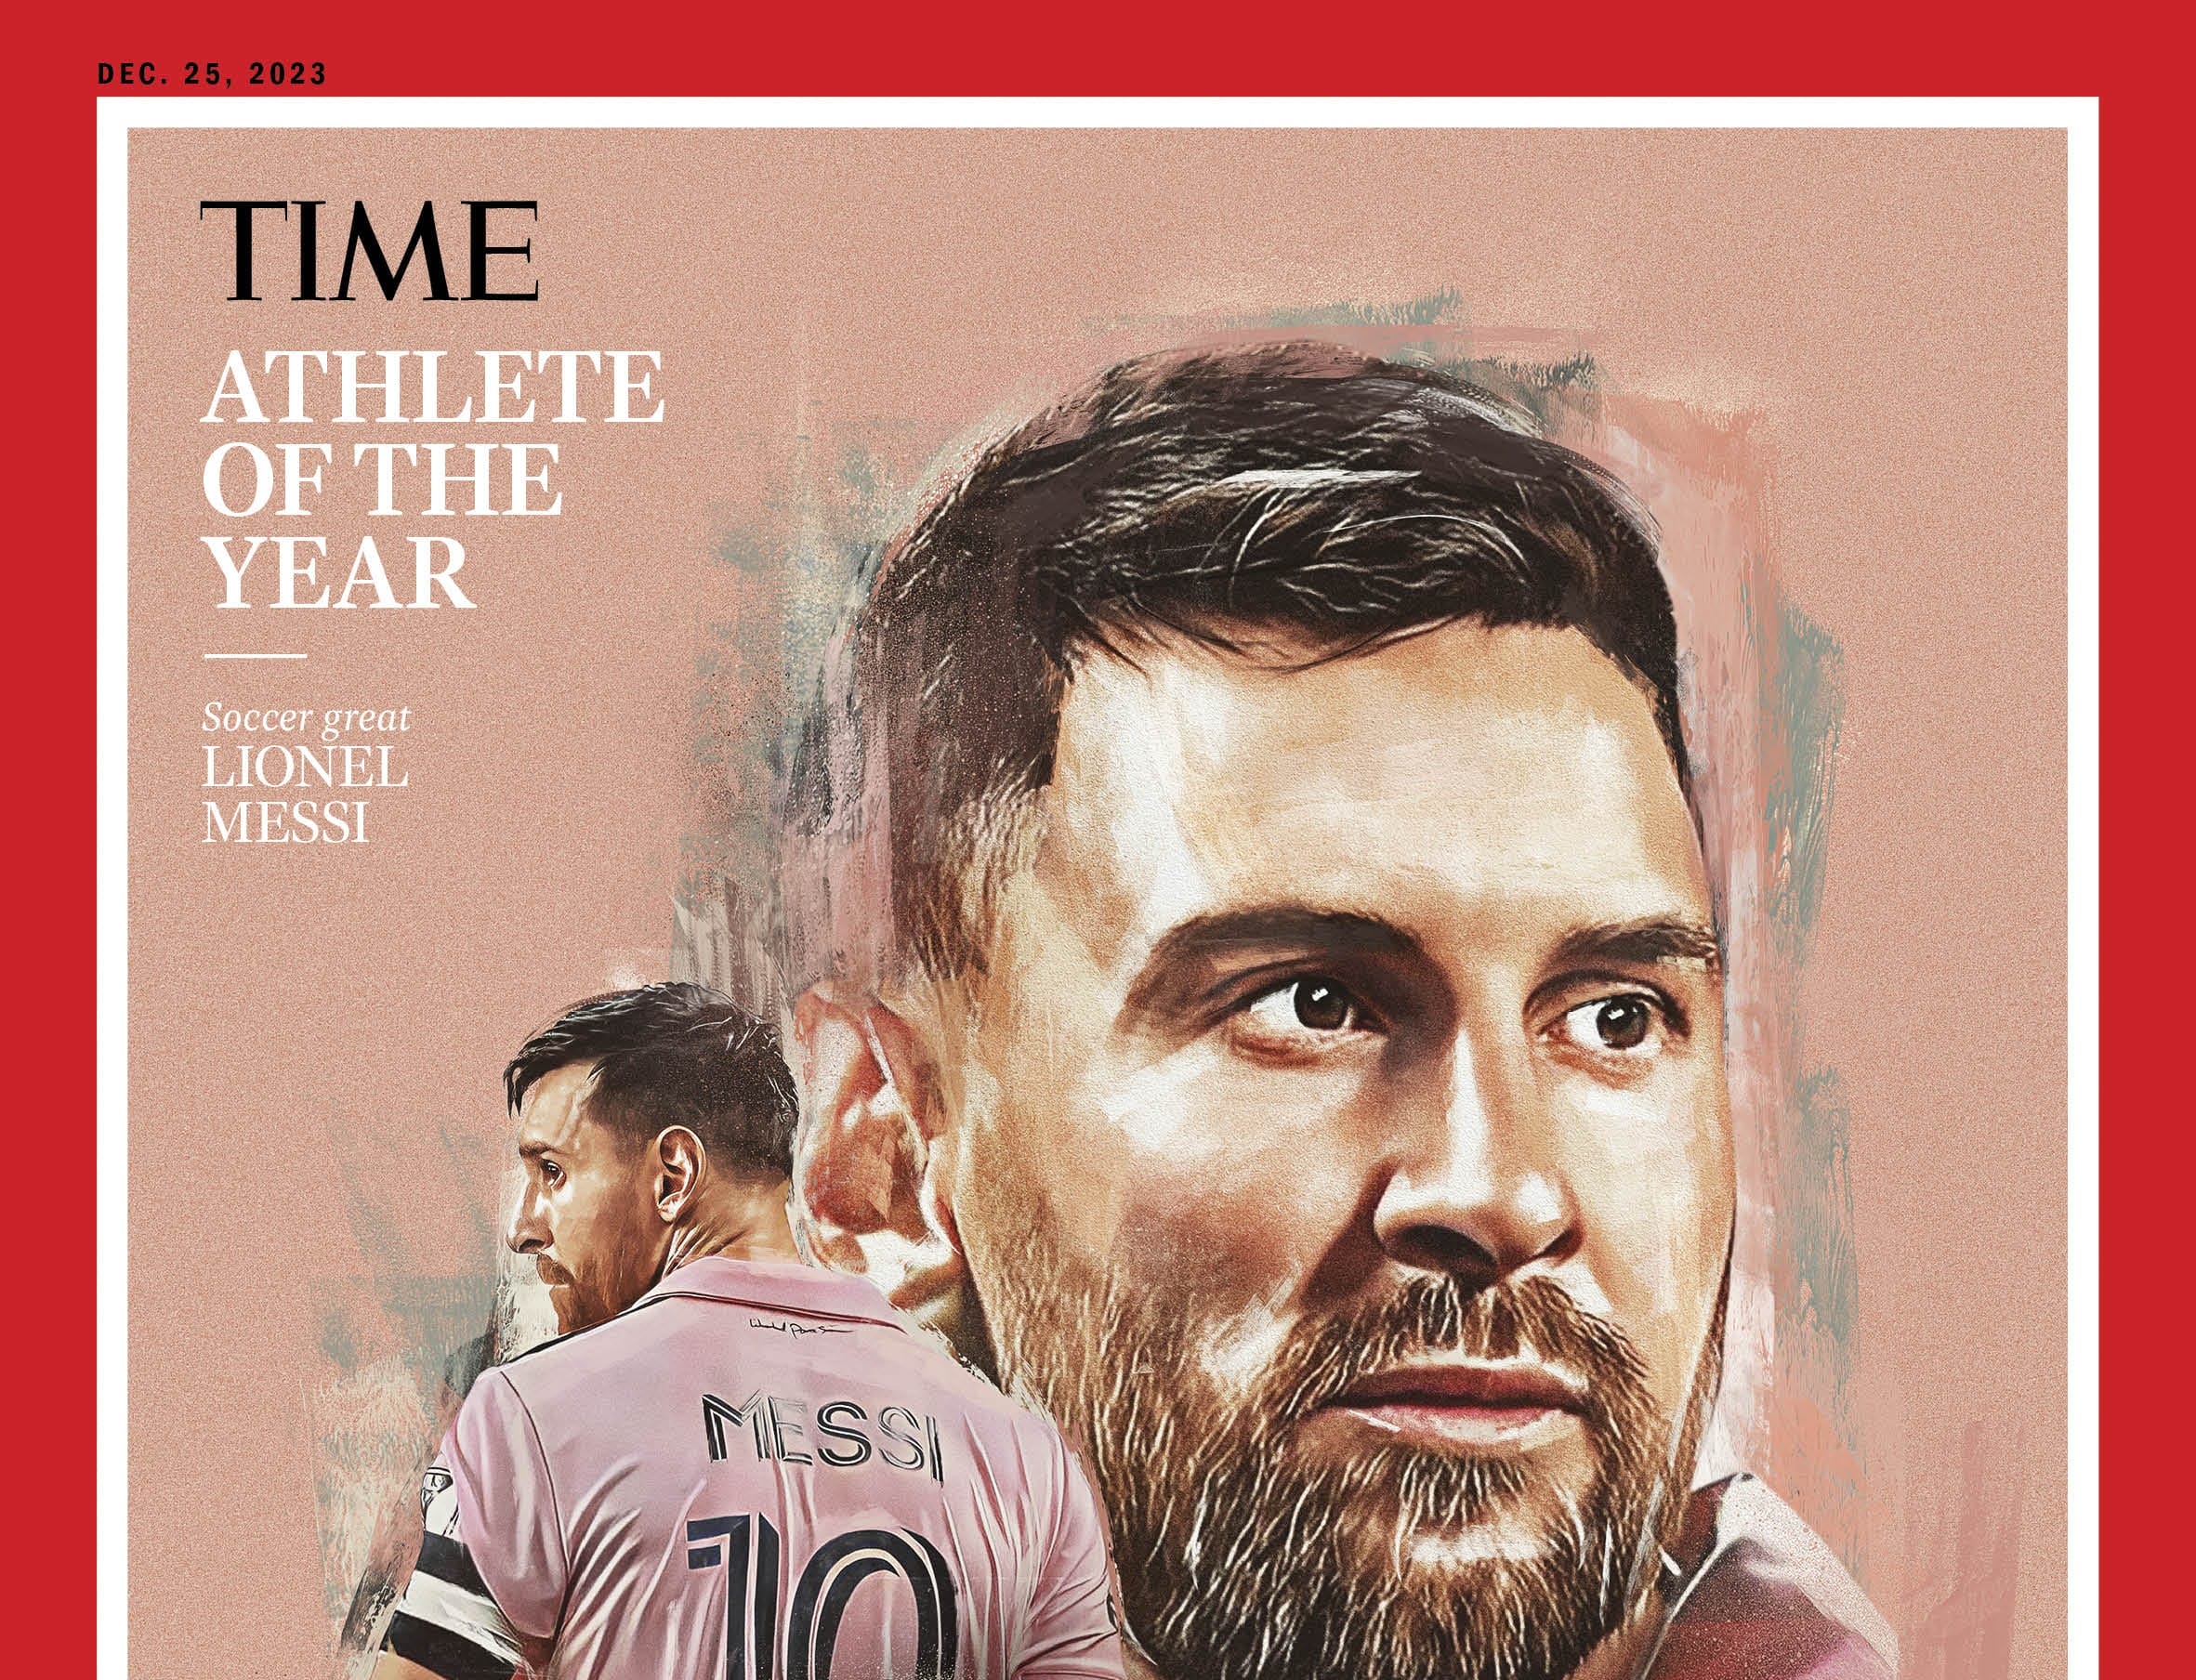 Messi es elegido el Deportista del Año por la revista Time